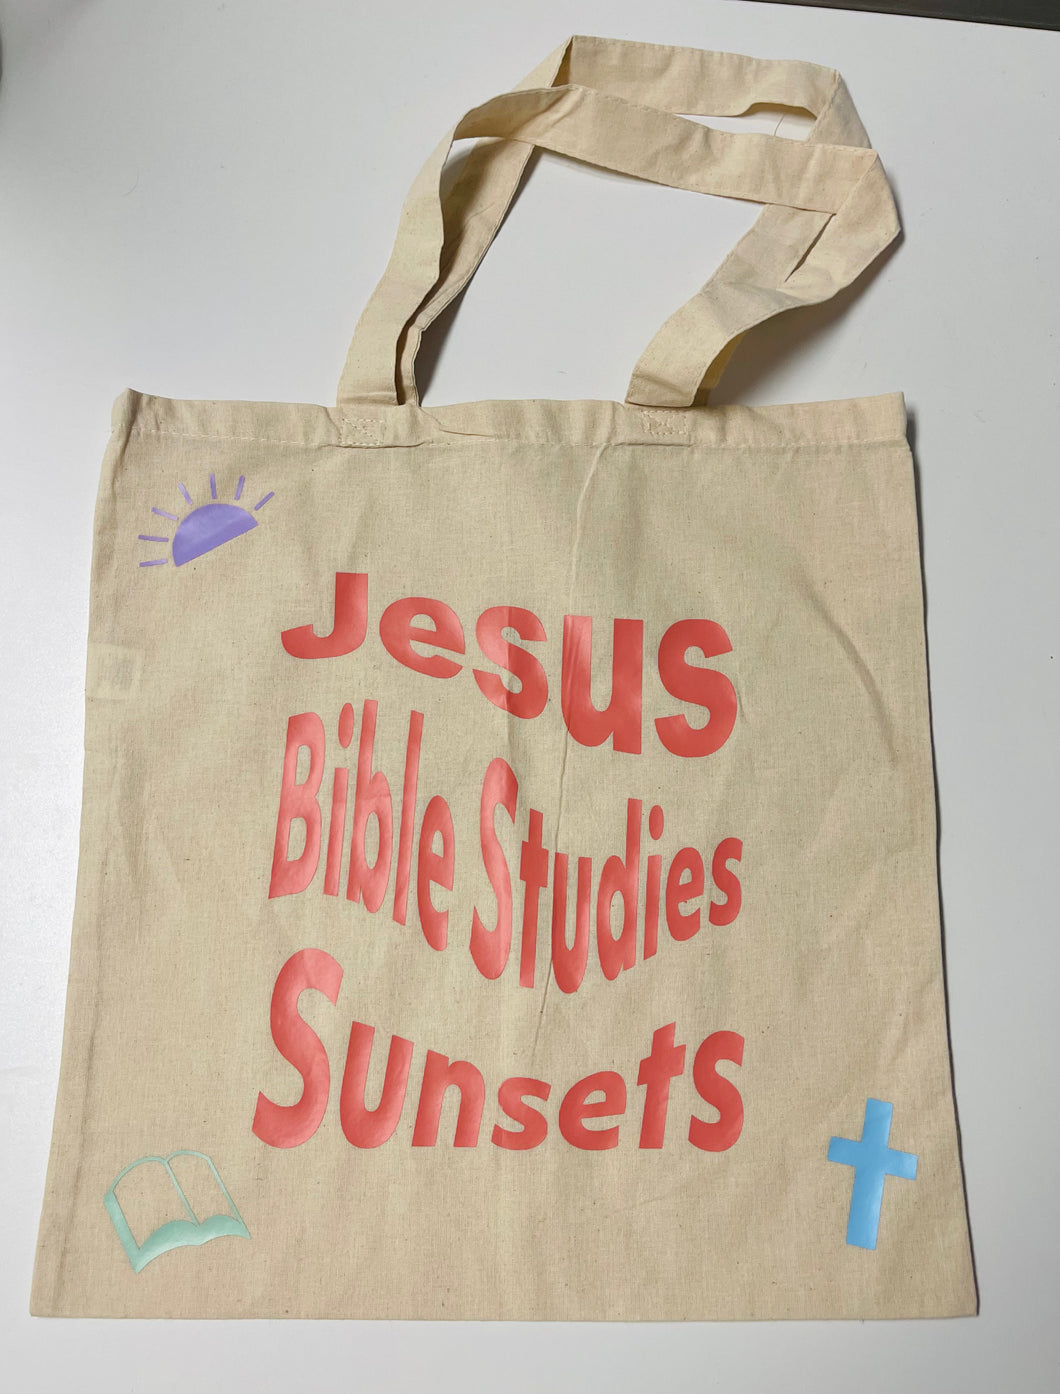 Bible studies tote bag